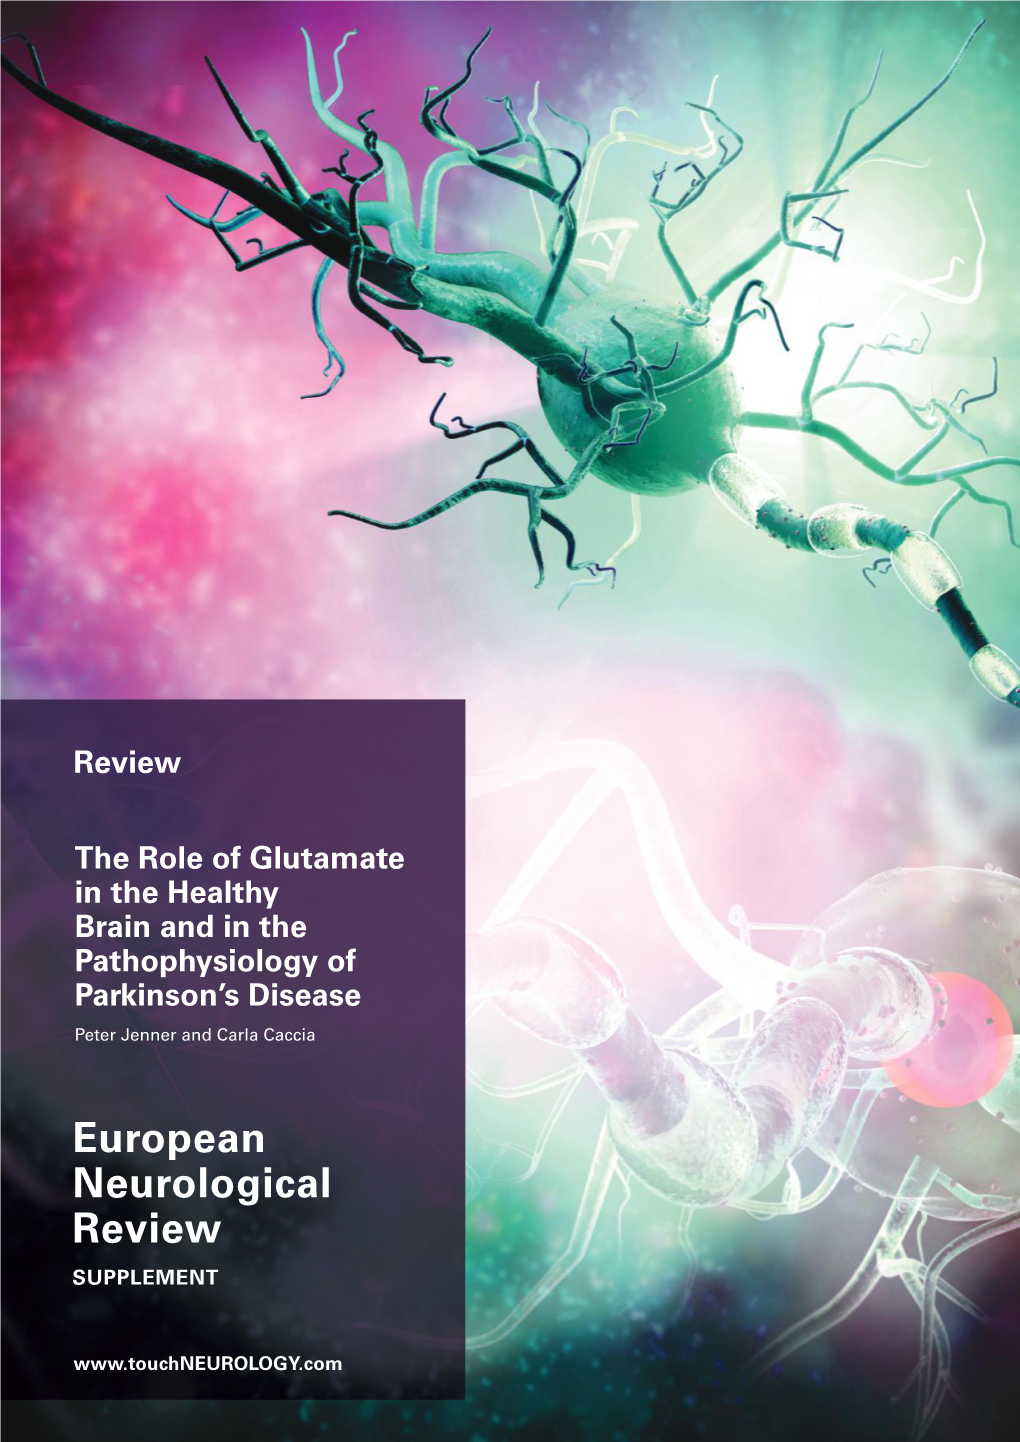 European Neurological Review SUPPLEMENT